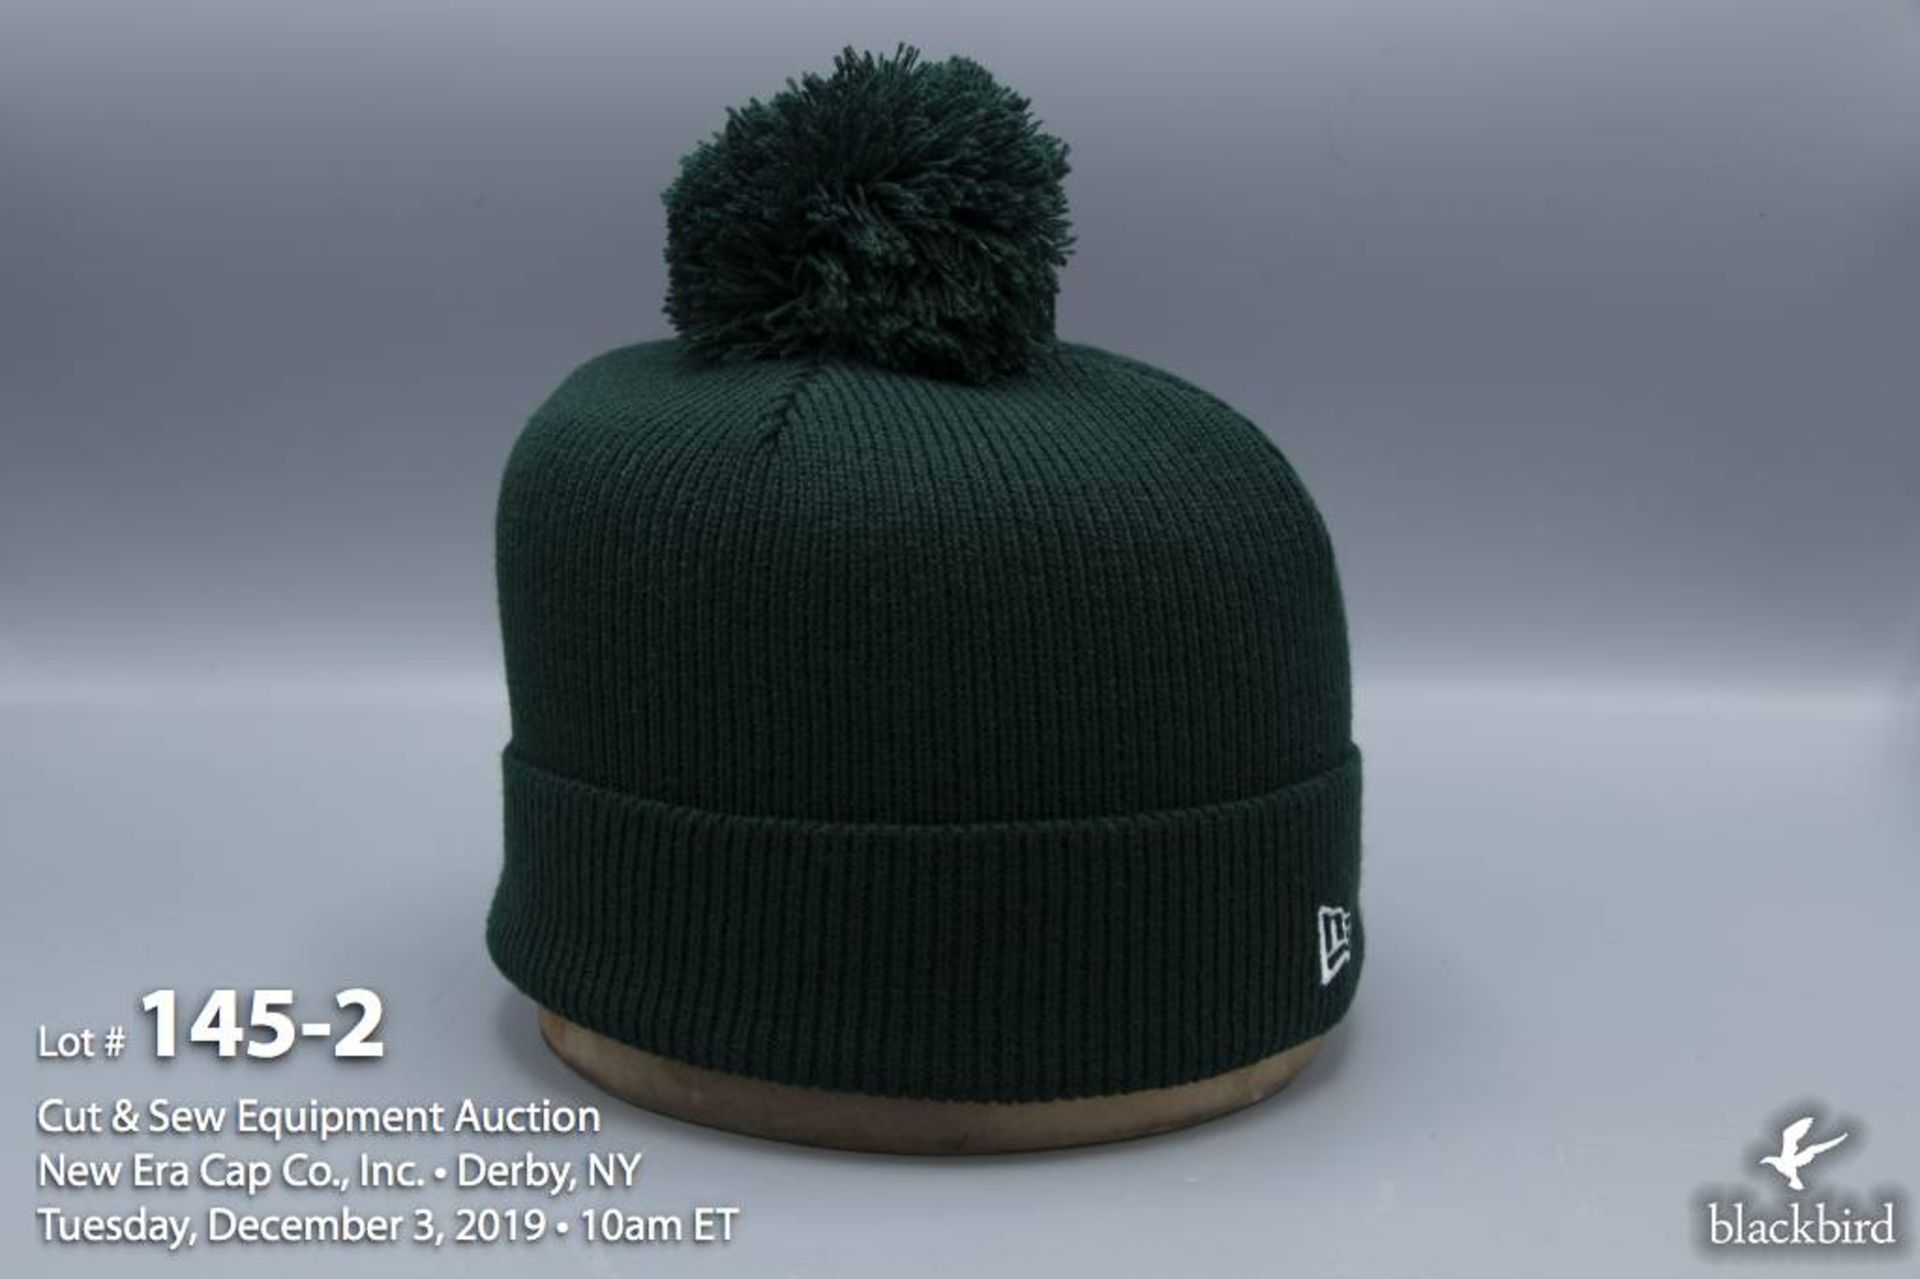 (72) New Era Pom Pom Knit Hat Dark Green - Image 2 of 2